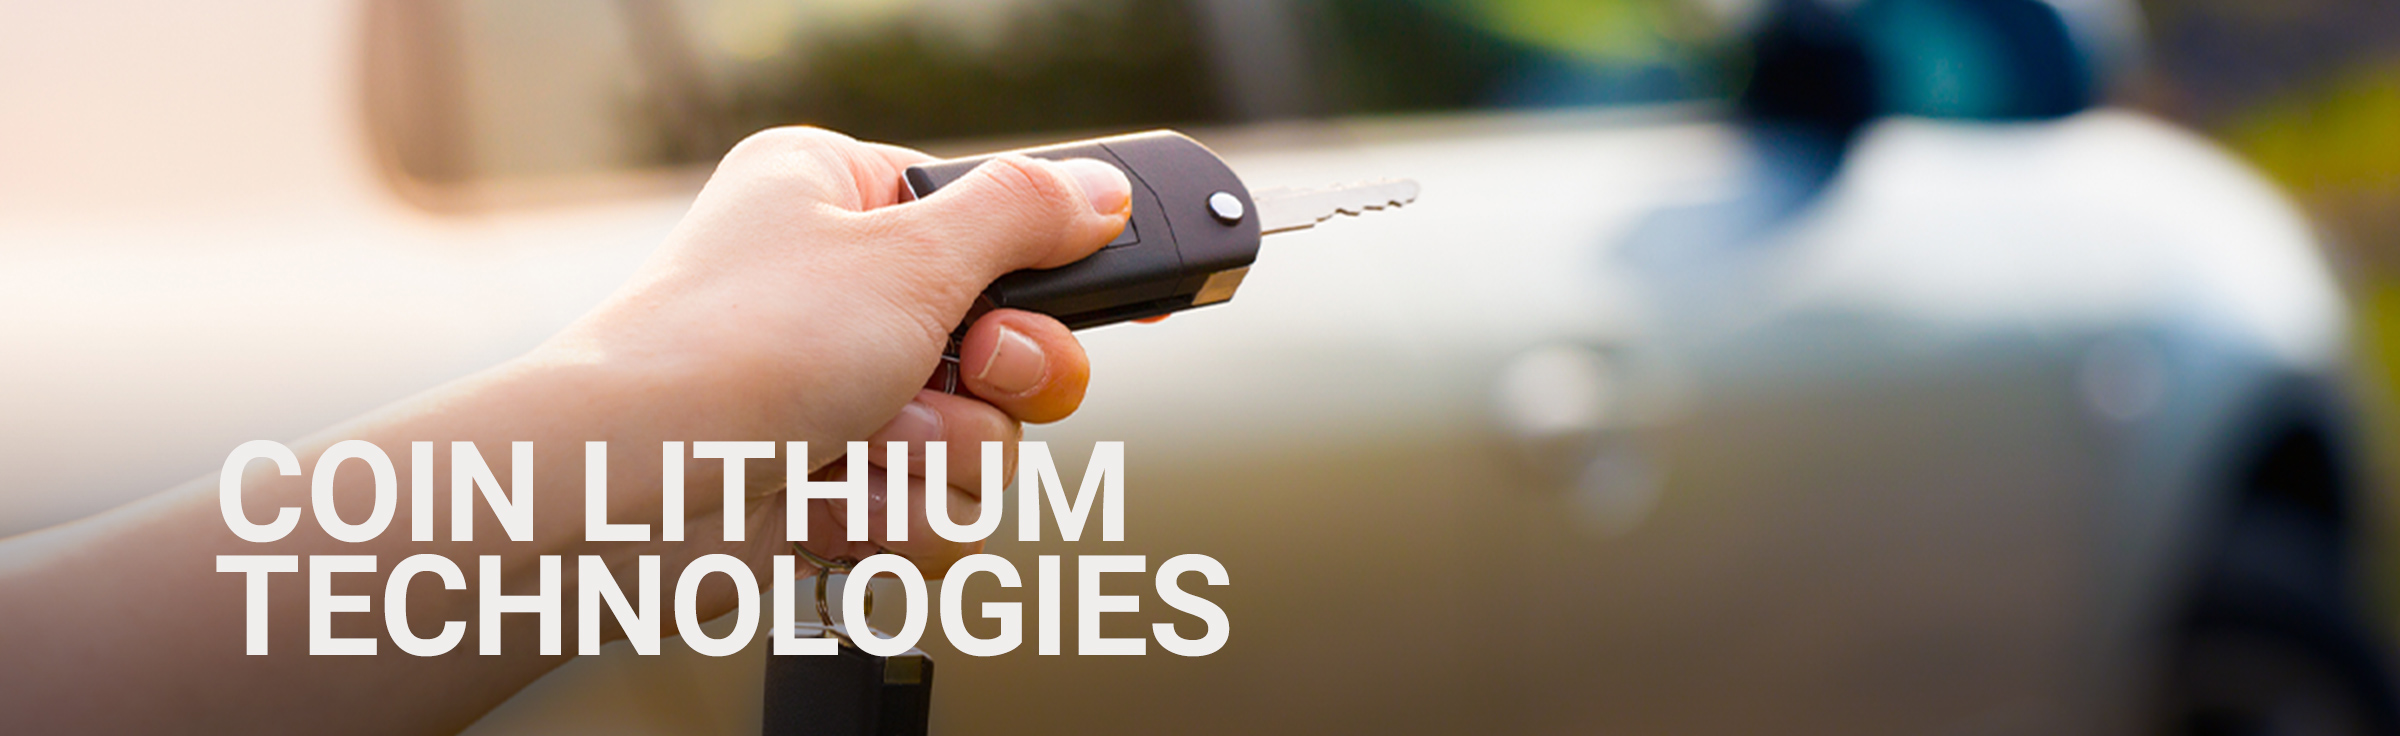 Coin Lithium Technologies